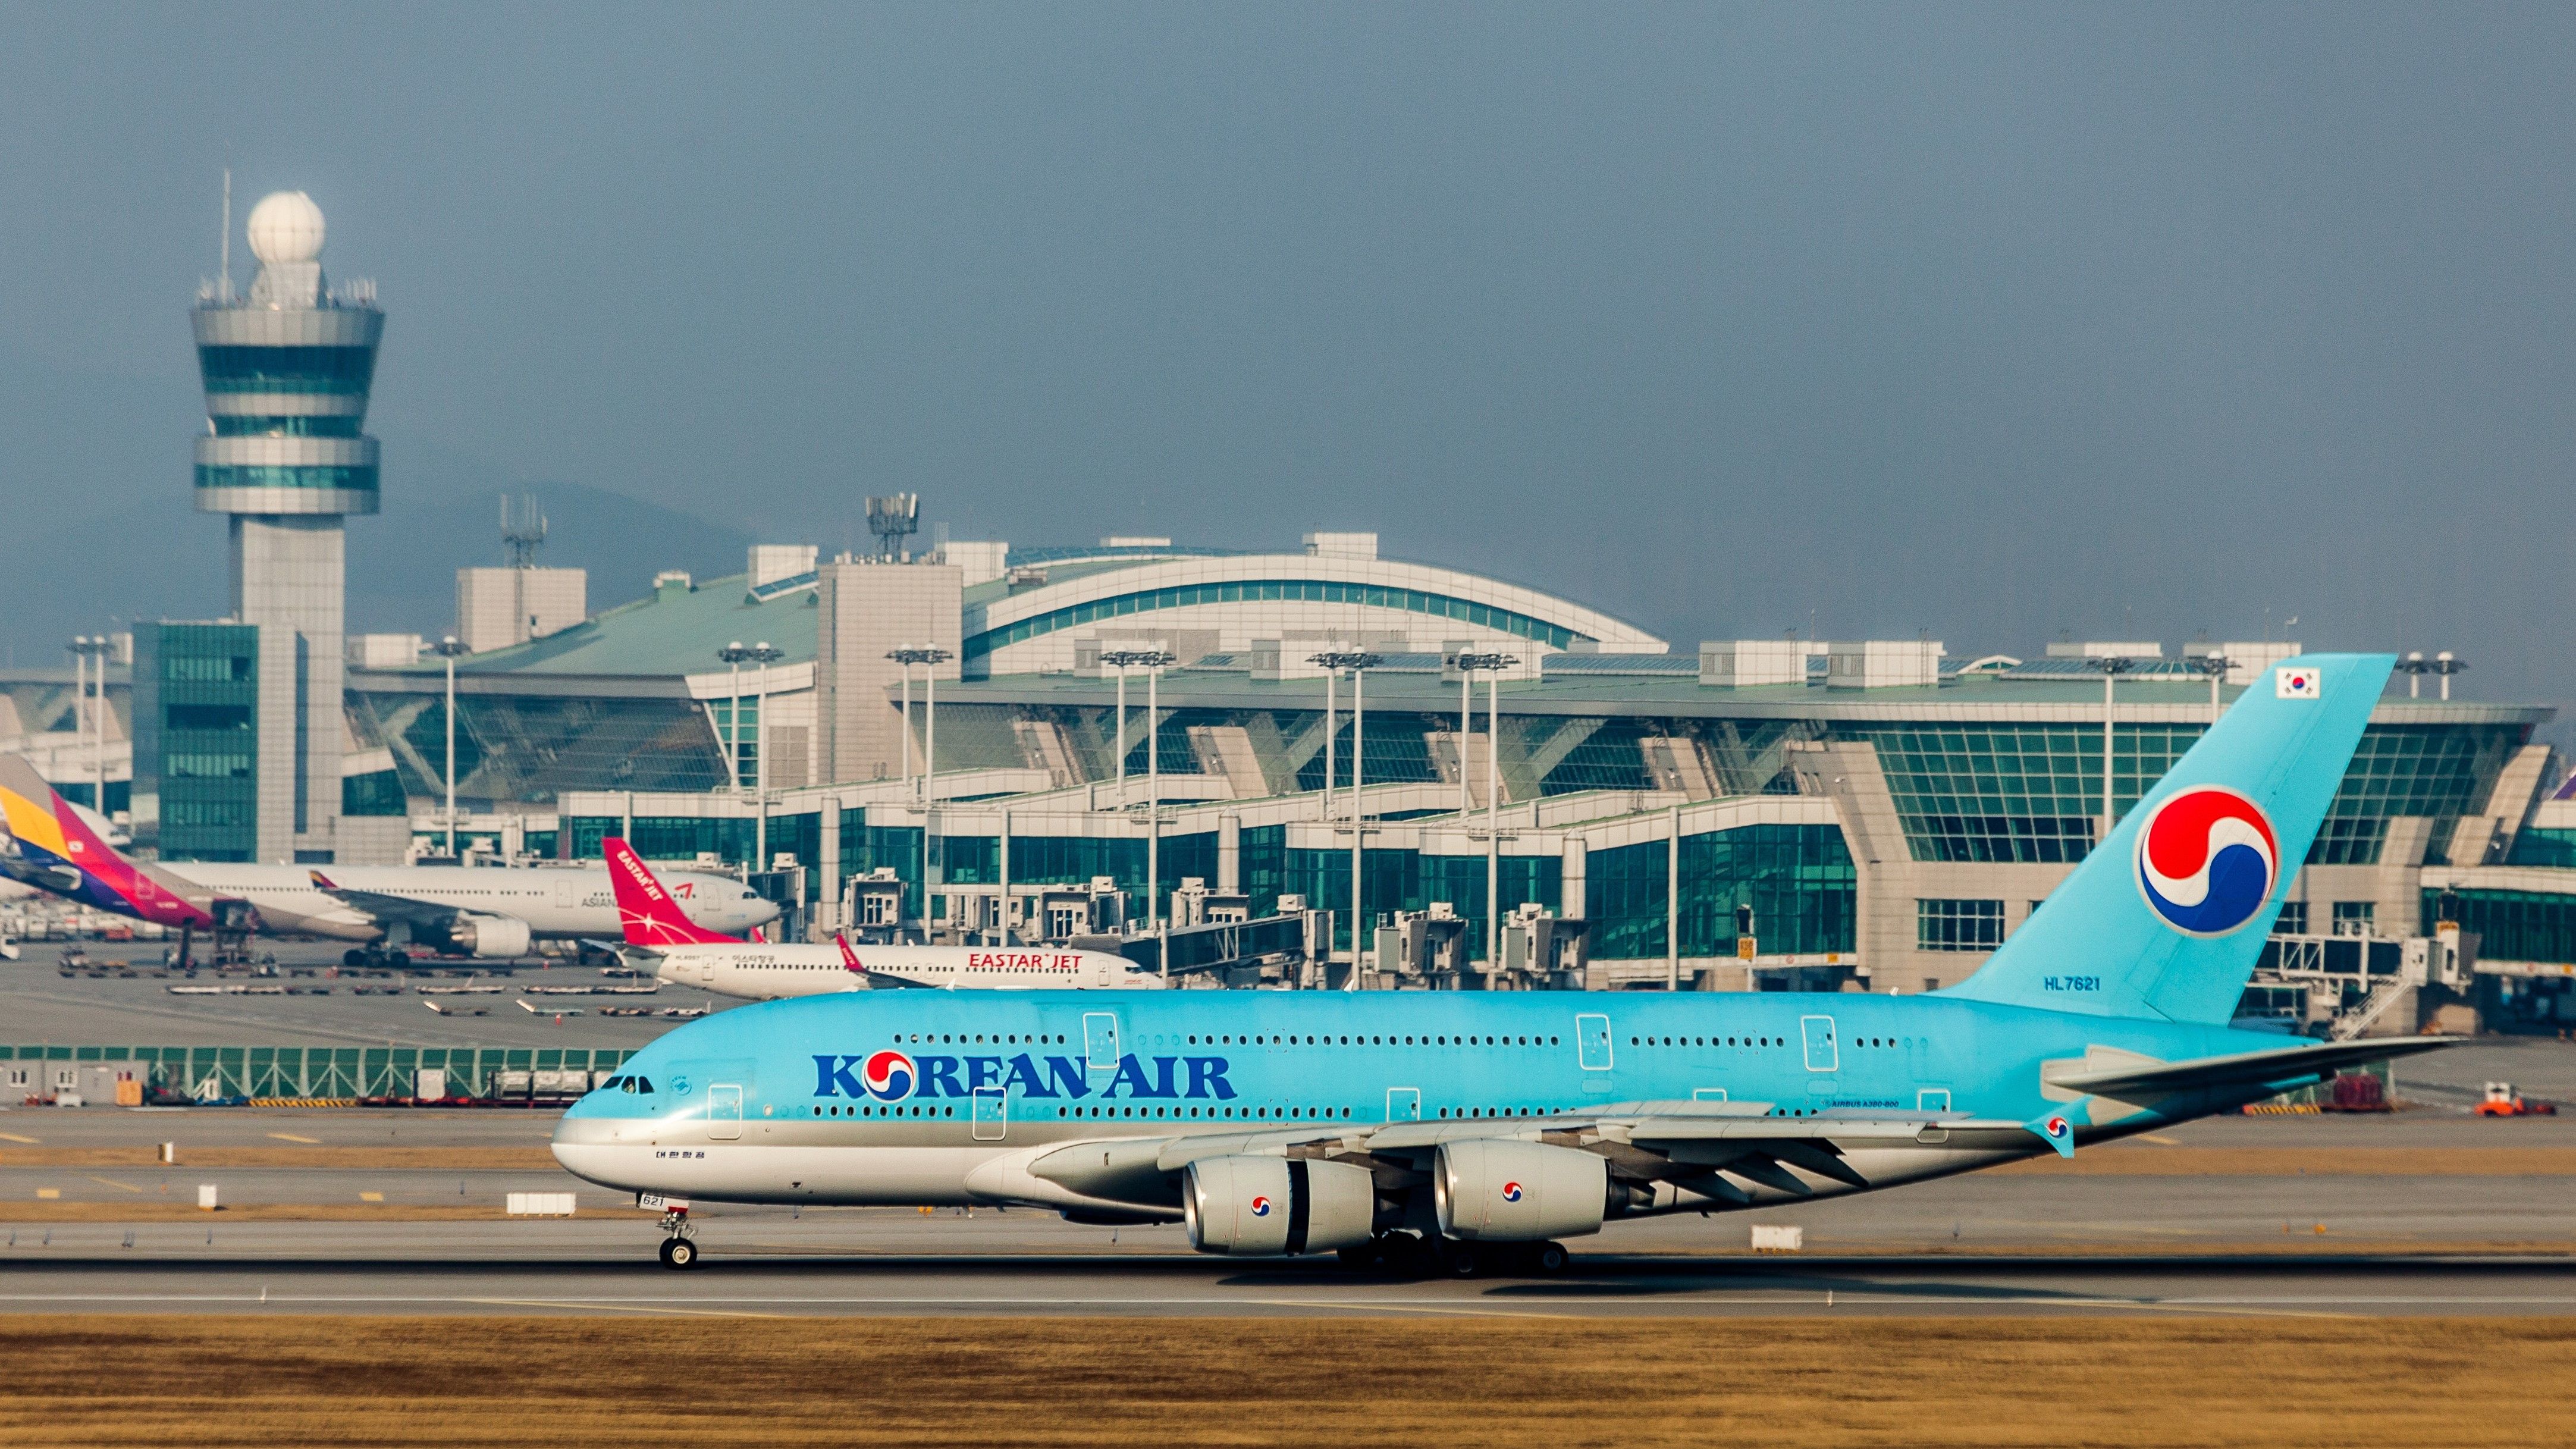 Korean air Airbus A380 